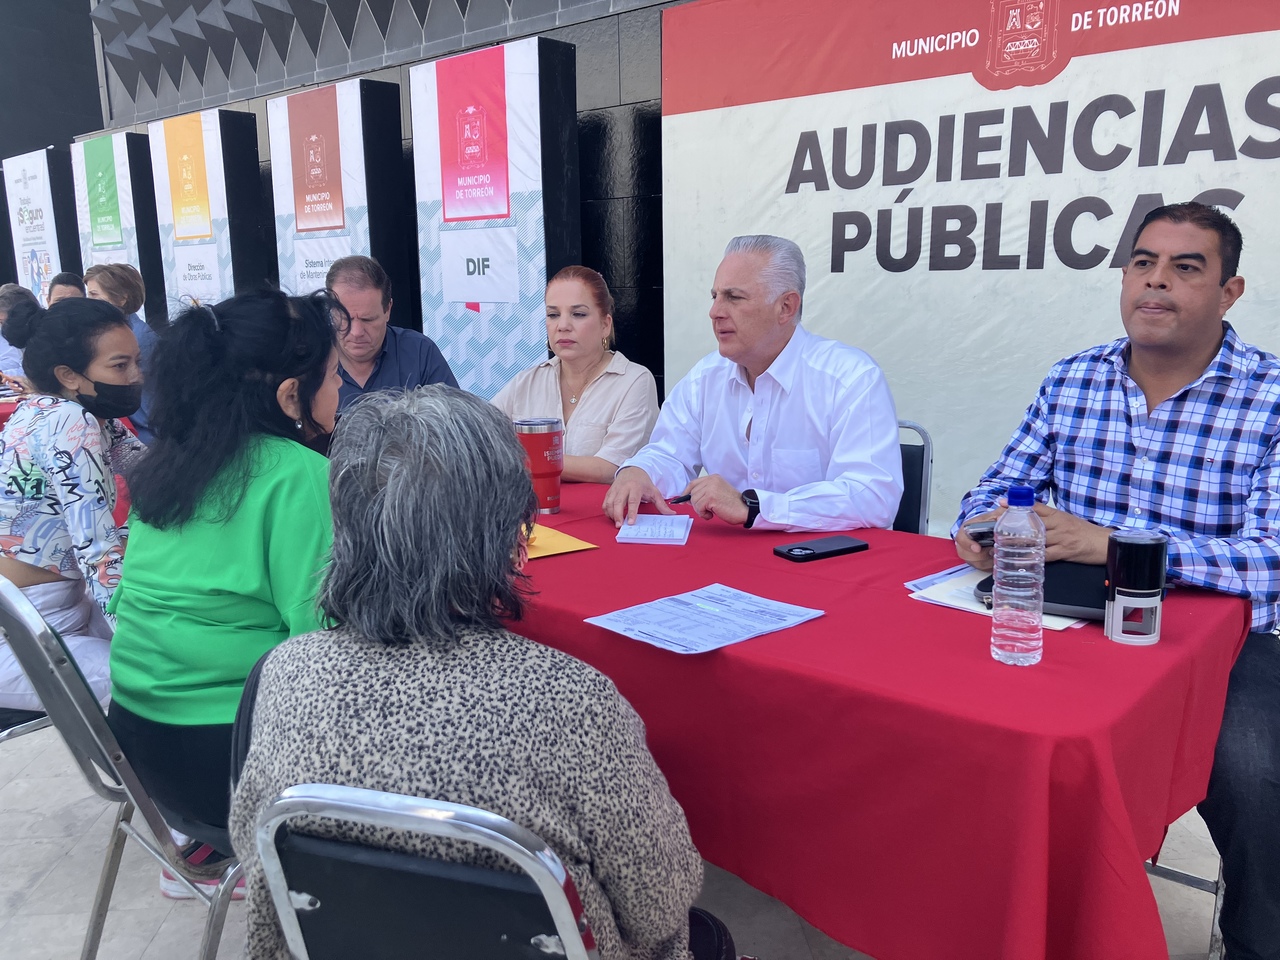 Ayer hubo Audiencias Públicas con el alcalde de Torreón.